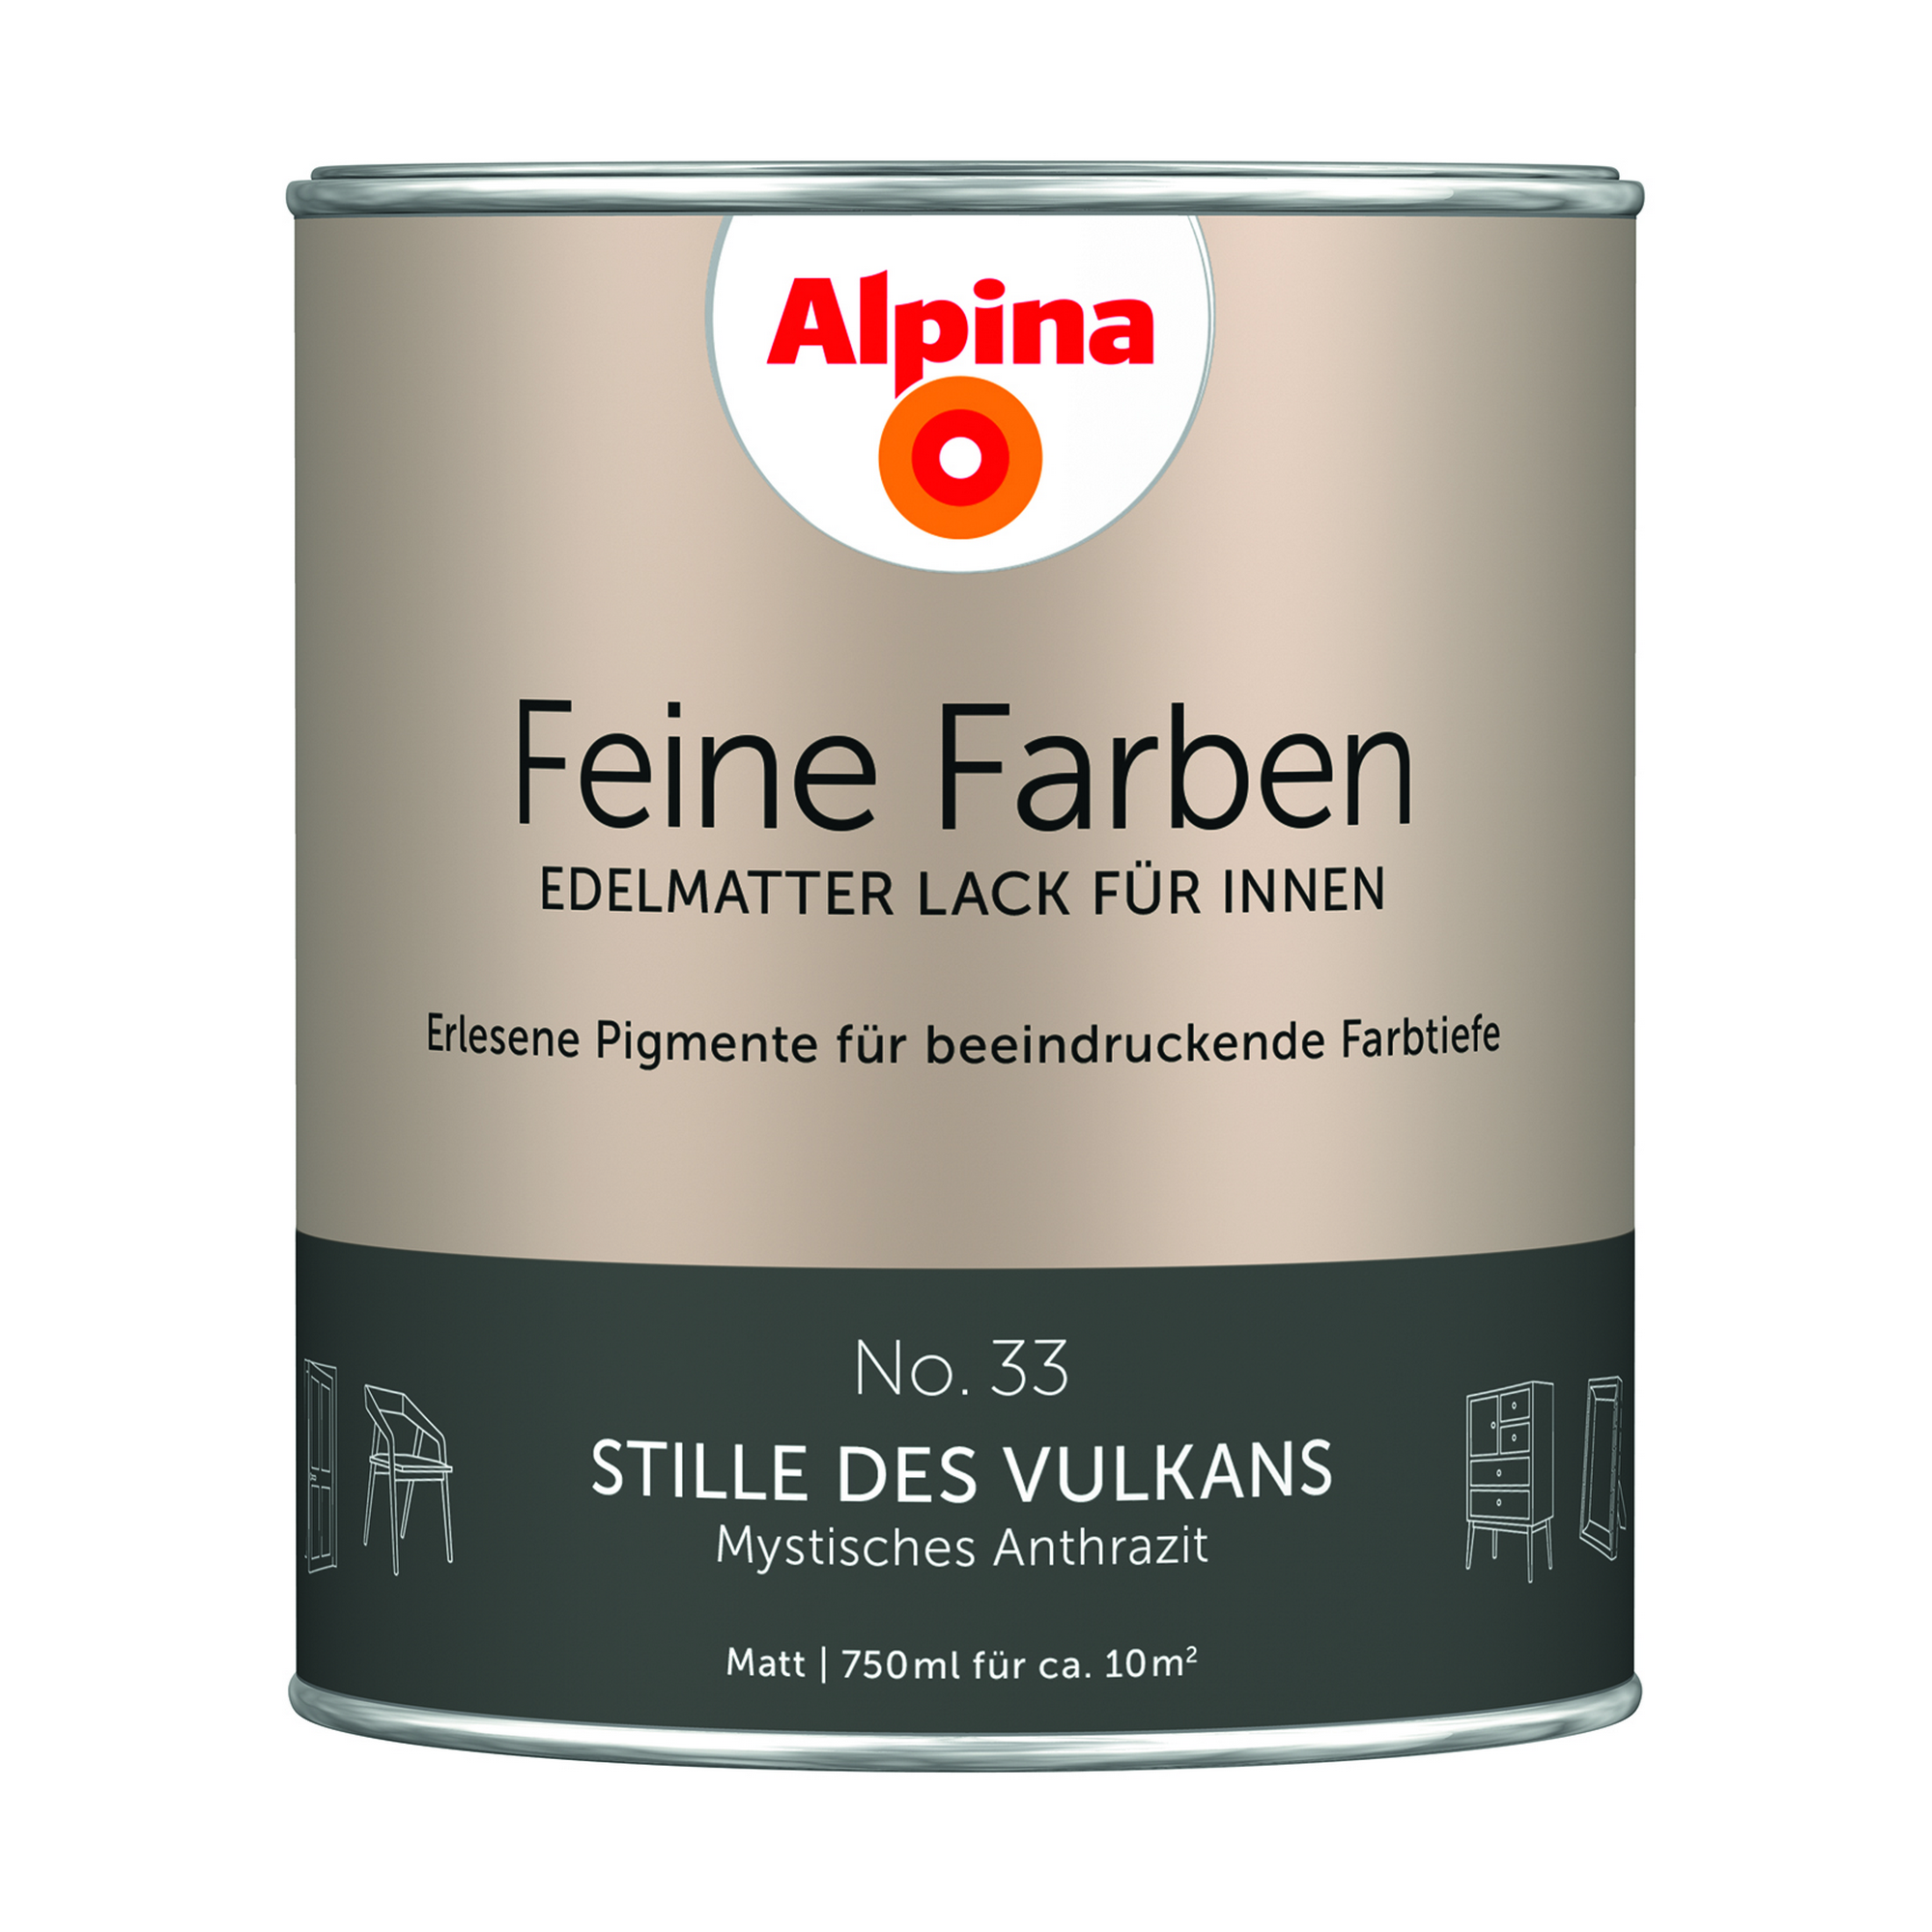 Feine Farben 'Stille des Vulkans' anthrazitgrau matt 750 ml + product picture